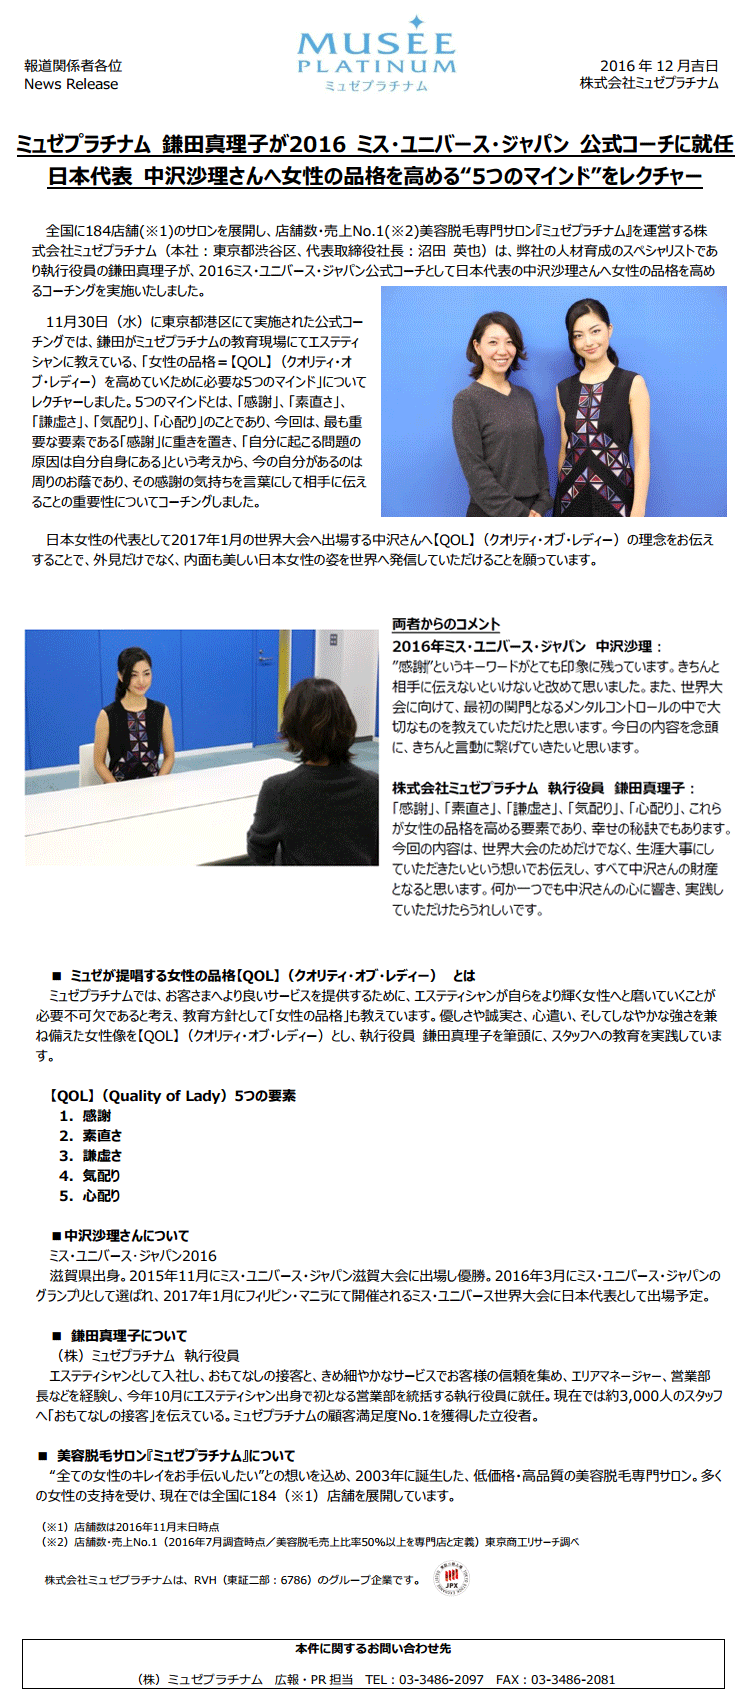 ミュゼプラチナム 鎌田真理子が16 ミス ユニバース ジャパン 公式コーチに就任 日本代表 中沢沙理さんへ女性の品格を高める 5つのマインド をレクチャー ミュゼプラチナム コーポレートサイト